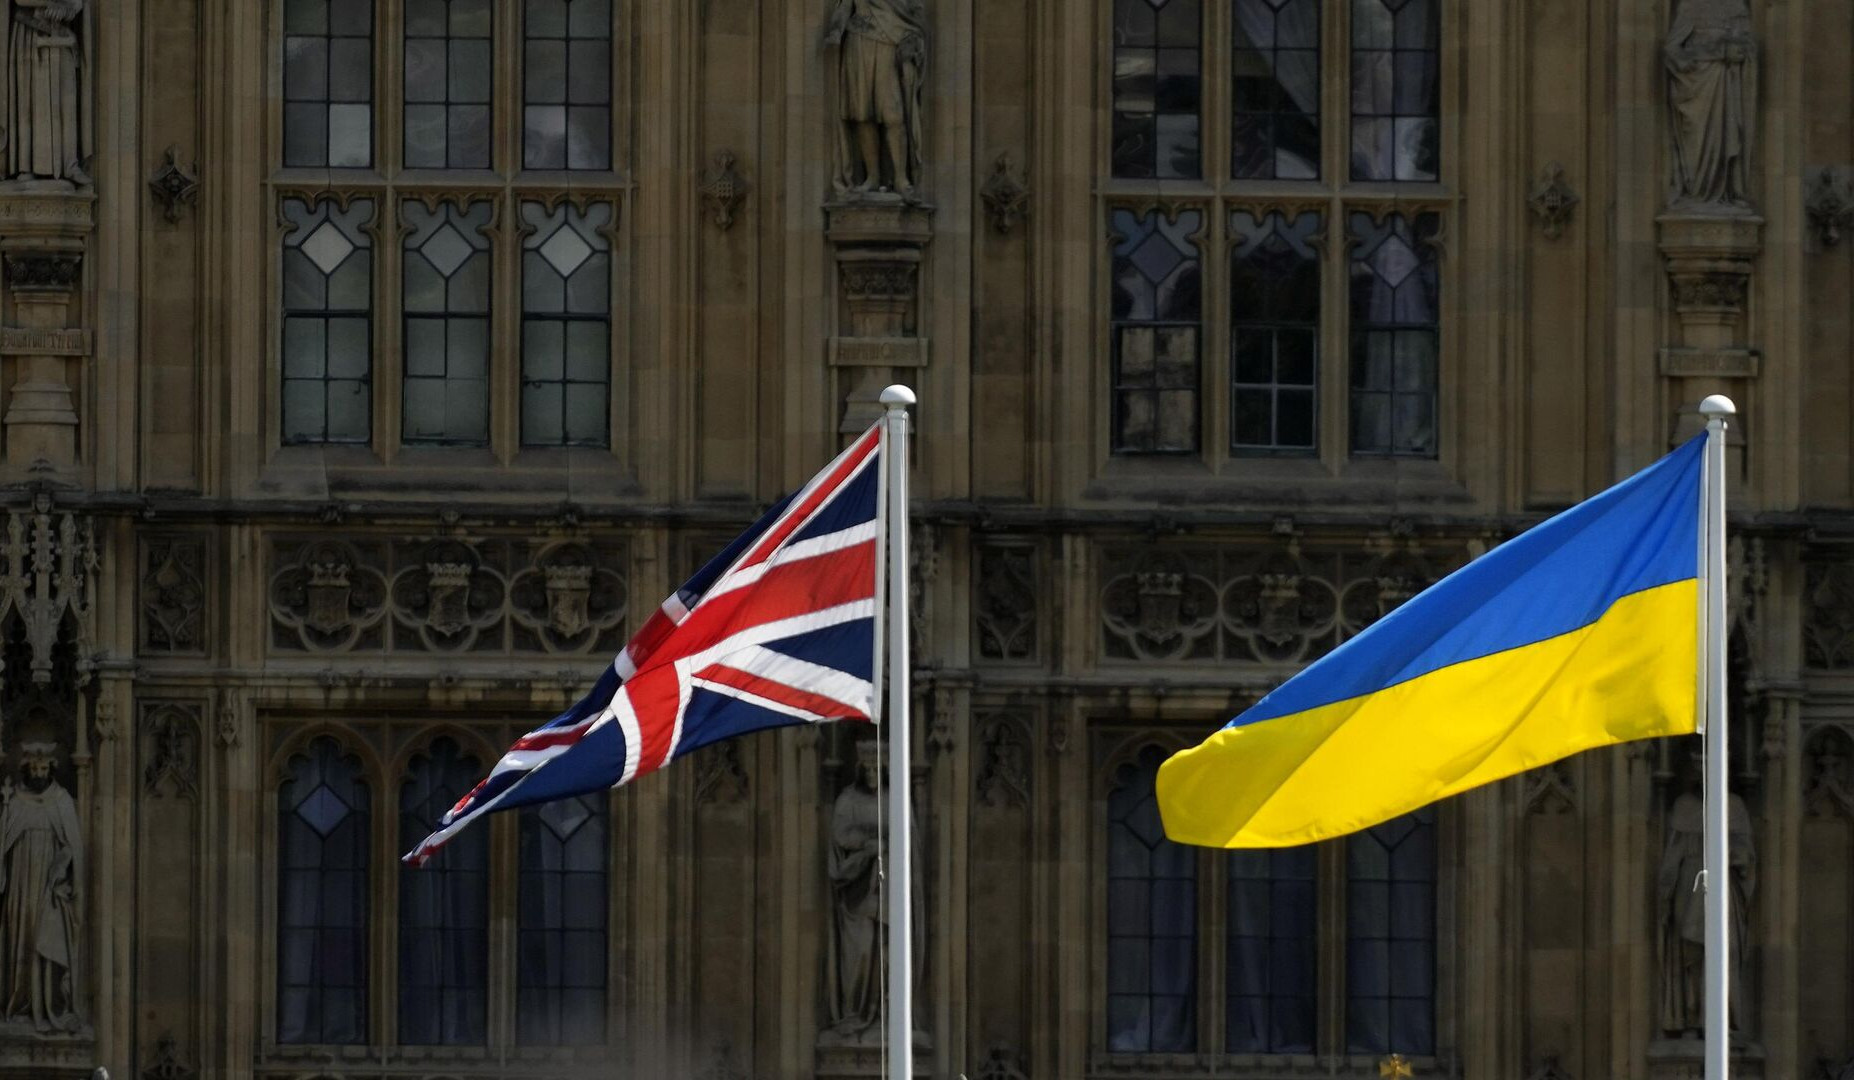 Մեծ Բրիտանիան Ուկրաինային տրամադրում է պատմության մեջ ռազմական օգնության ամենամեծ փաթեթը